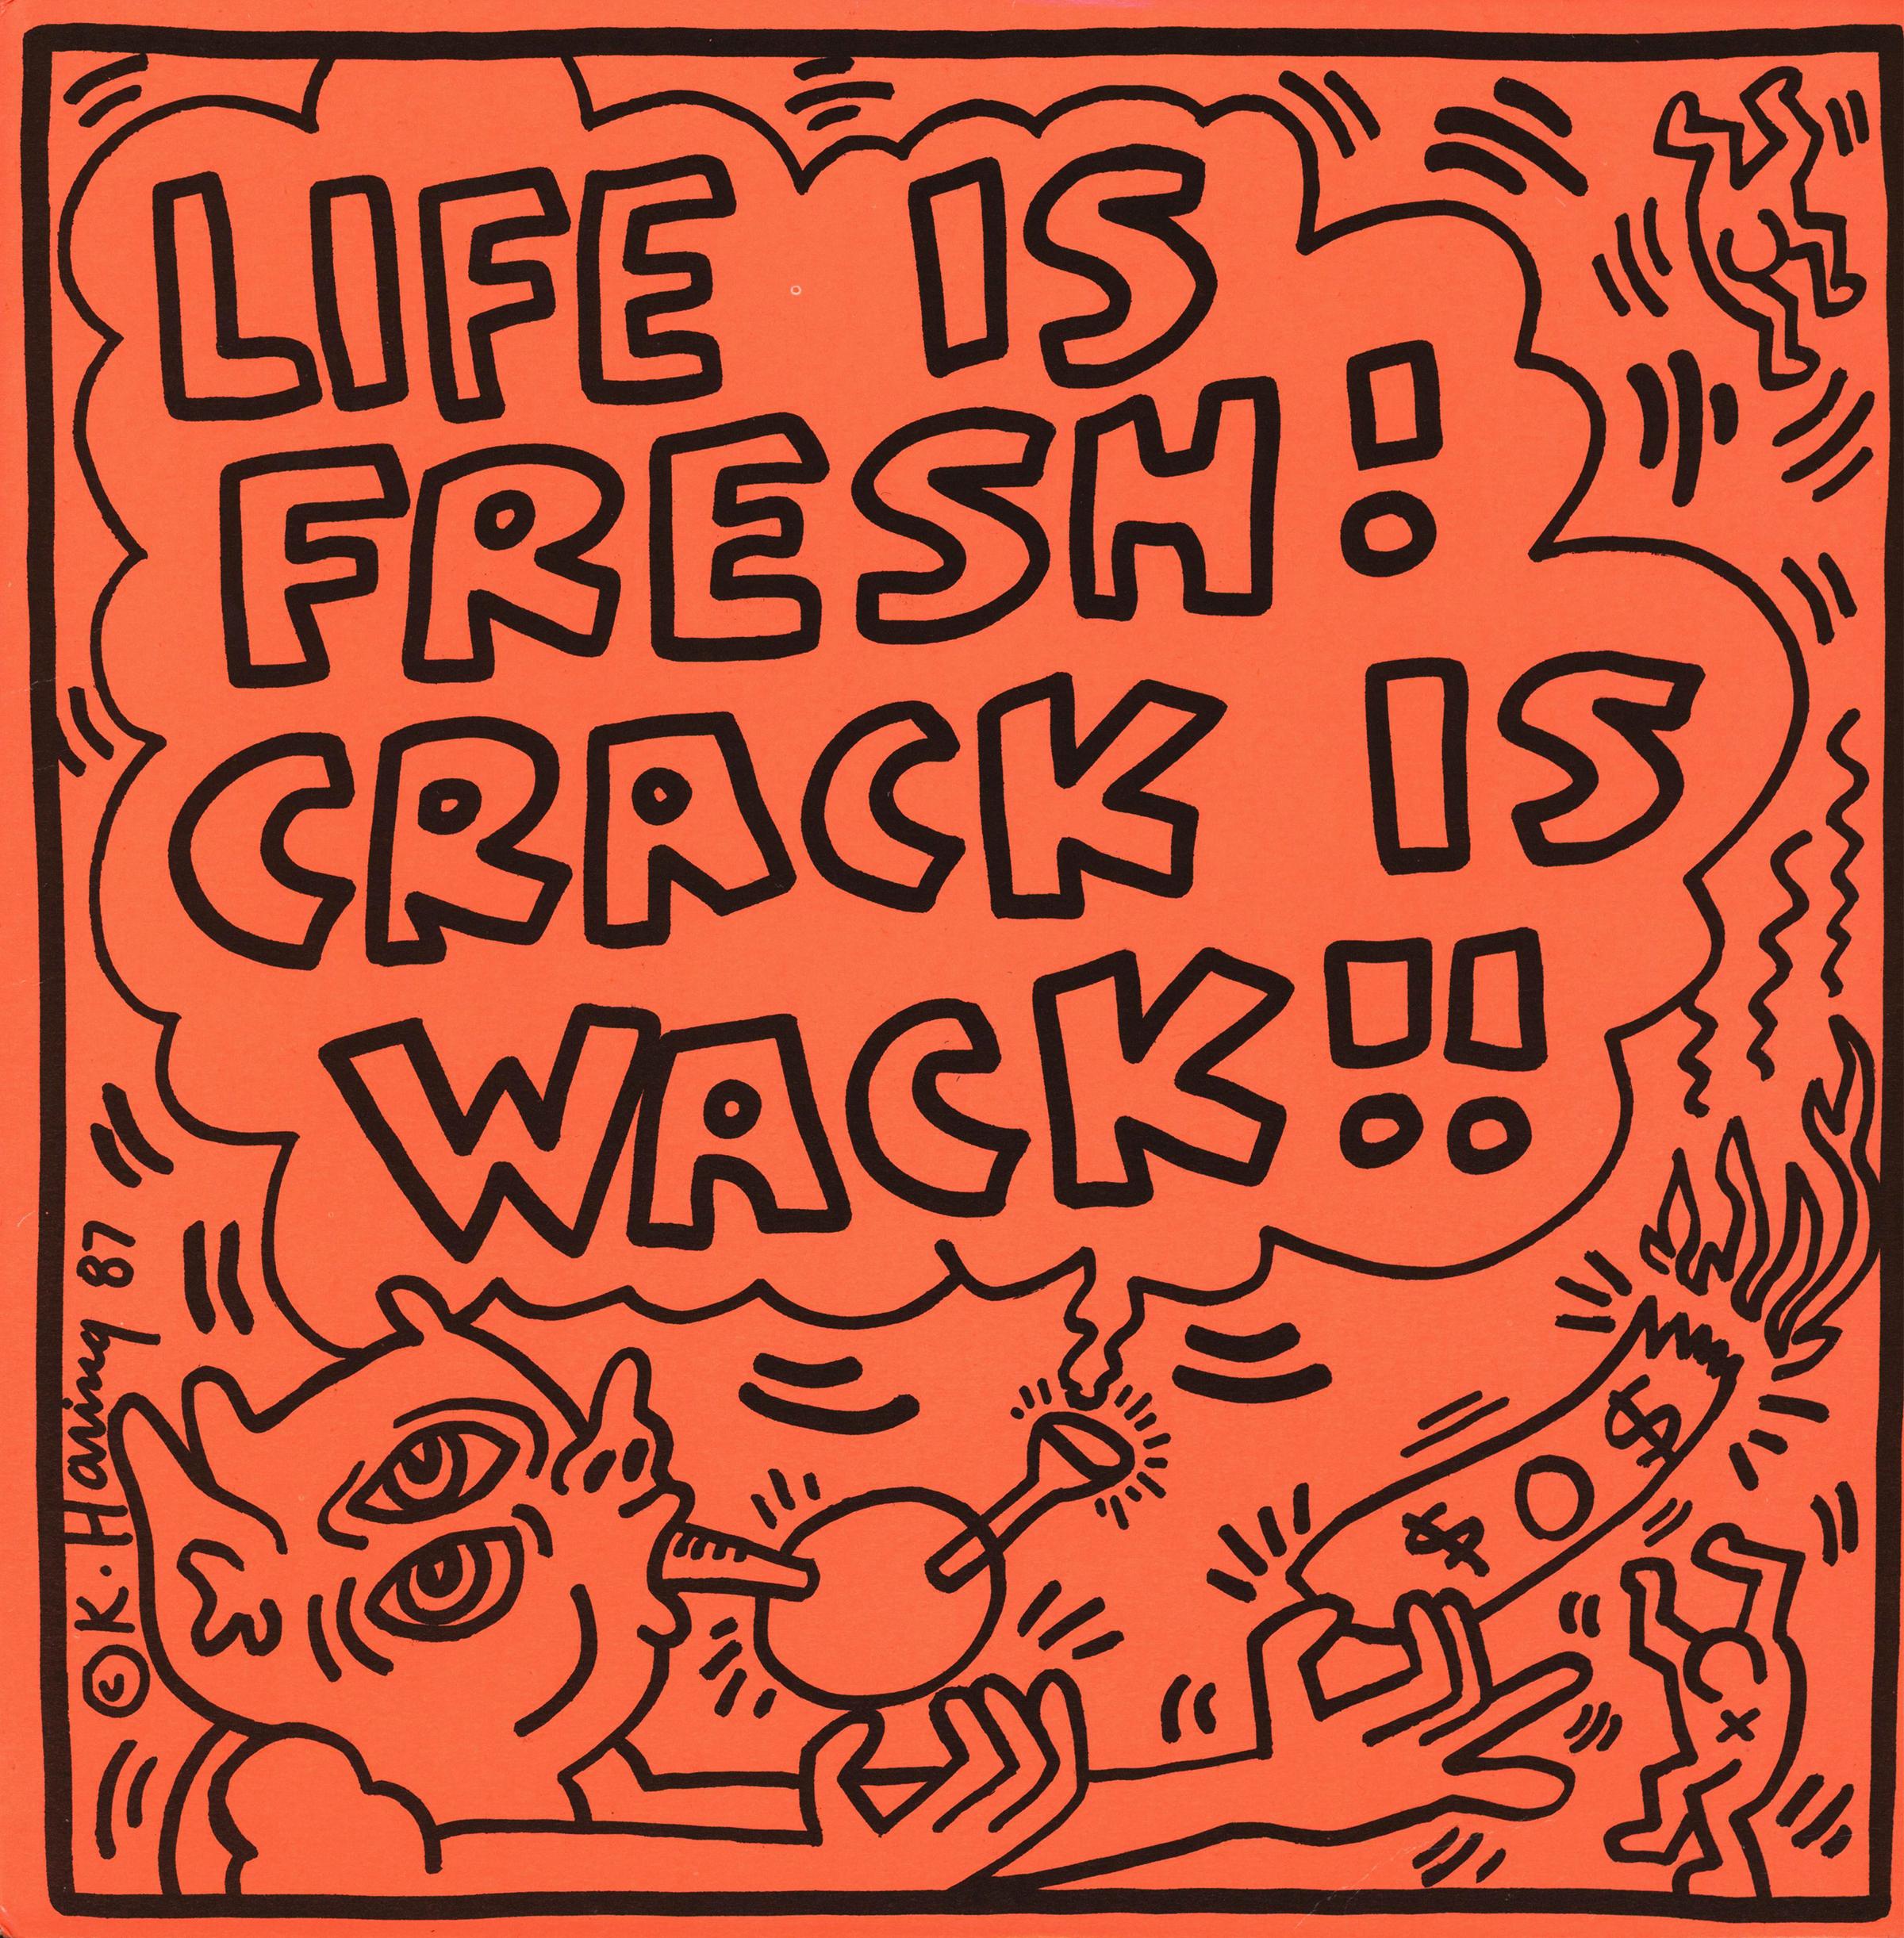 Rare Keith Haring "Life is Fresh ! Crack Is Wack !" 1987 :
Un album rare et très recherché des années 1980, avec une illustration originale de Keith Haring. Parmi les illustrations de disques de Keith Haring les plus difficiles à trouver.